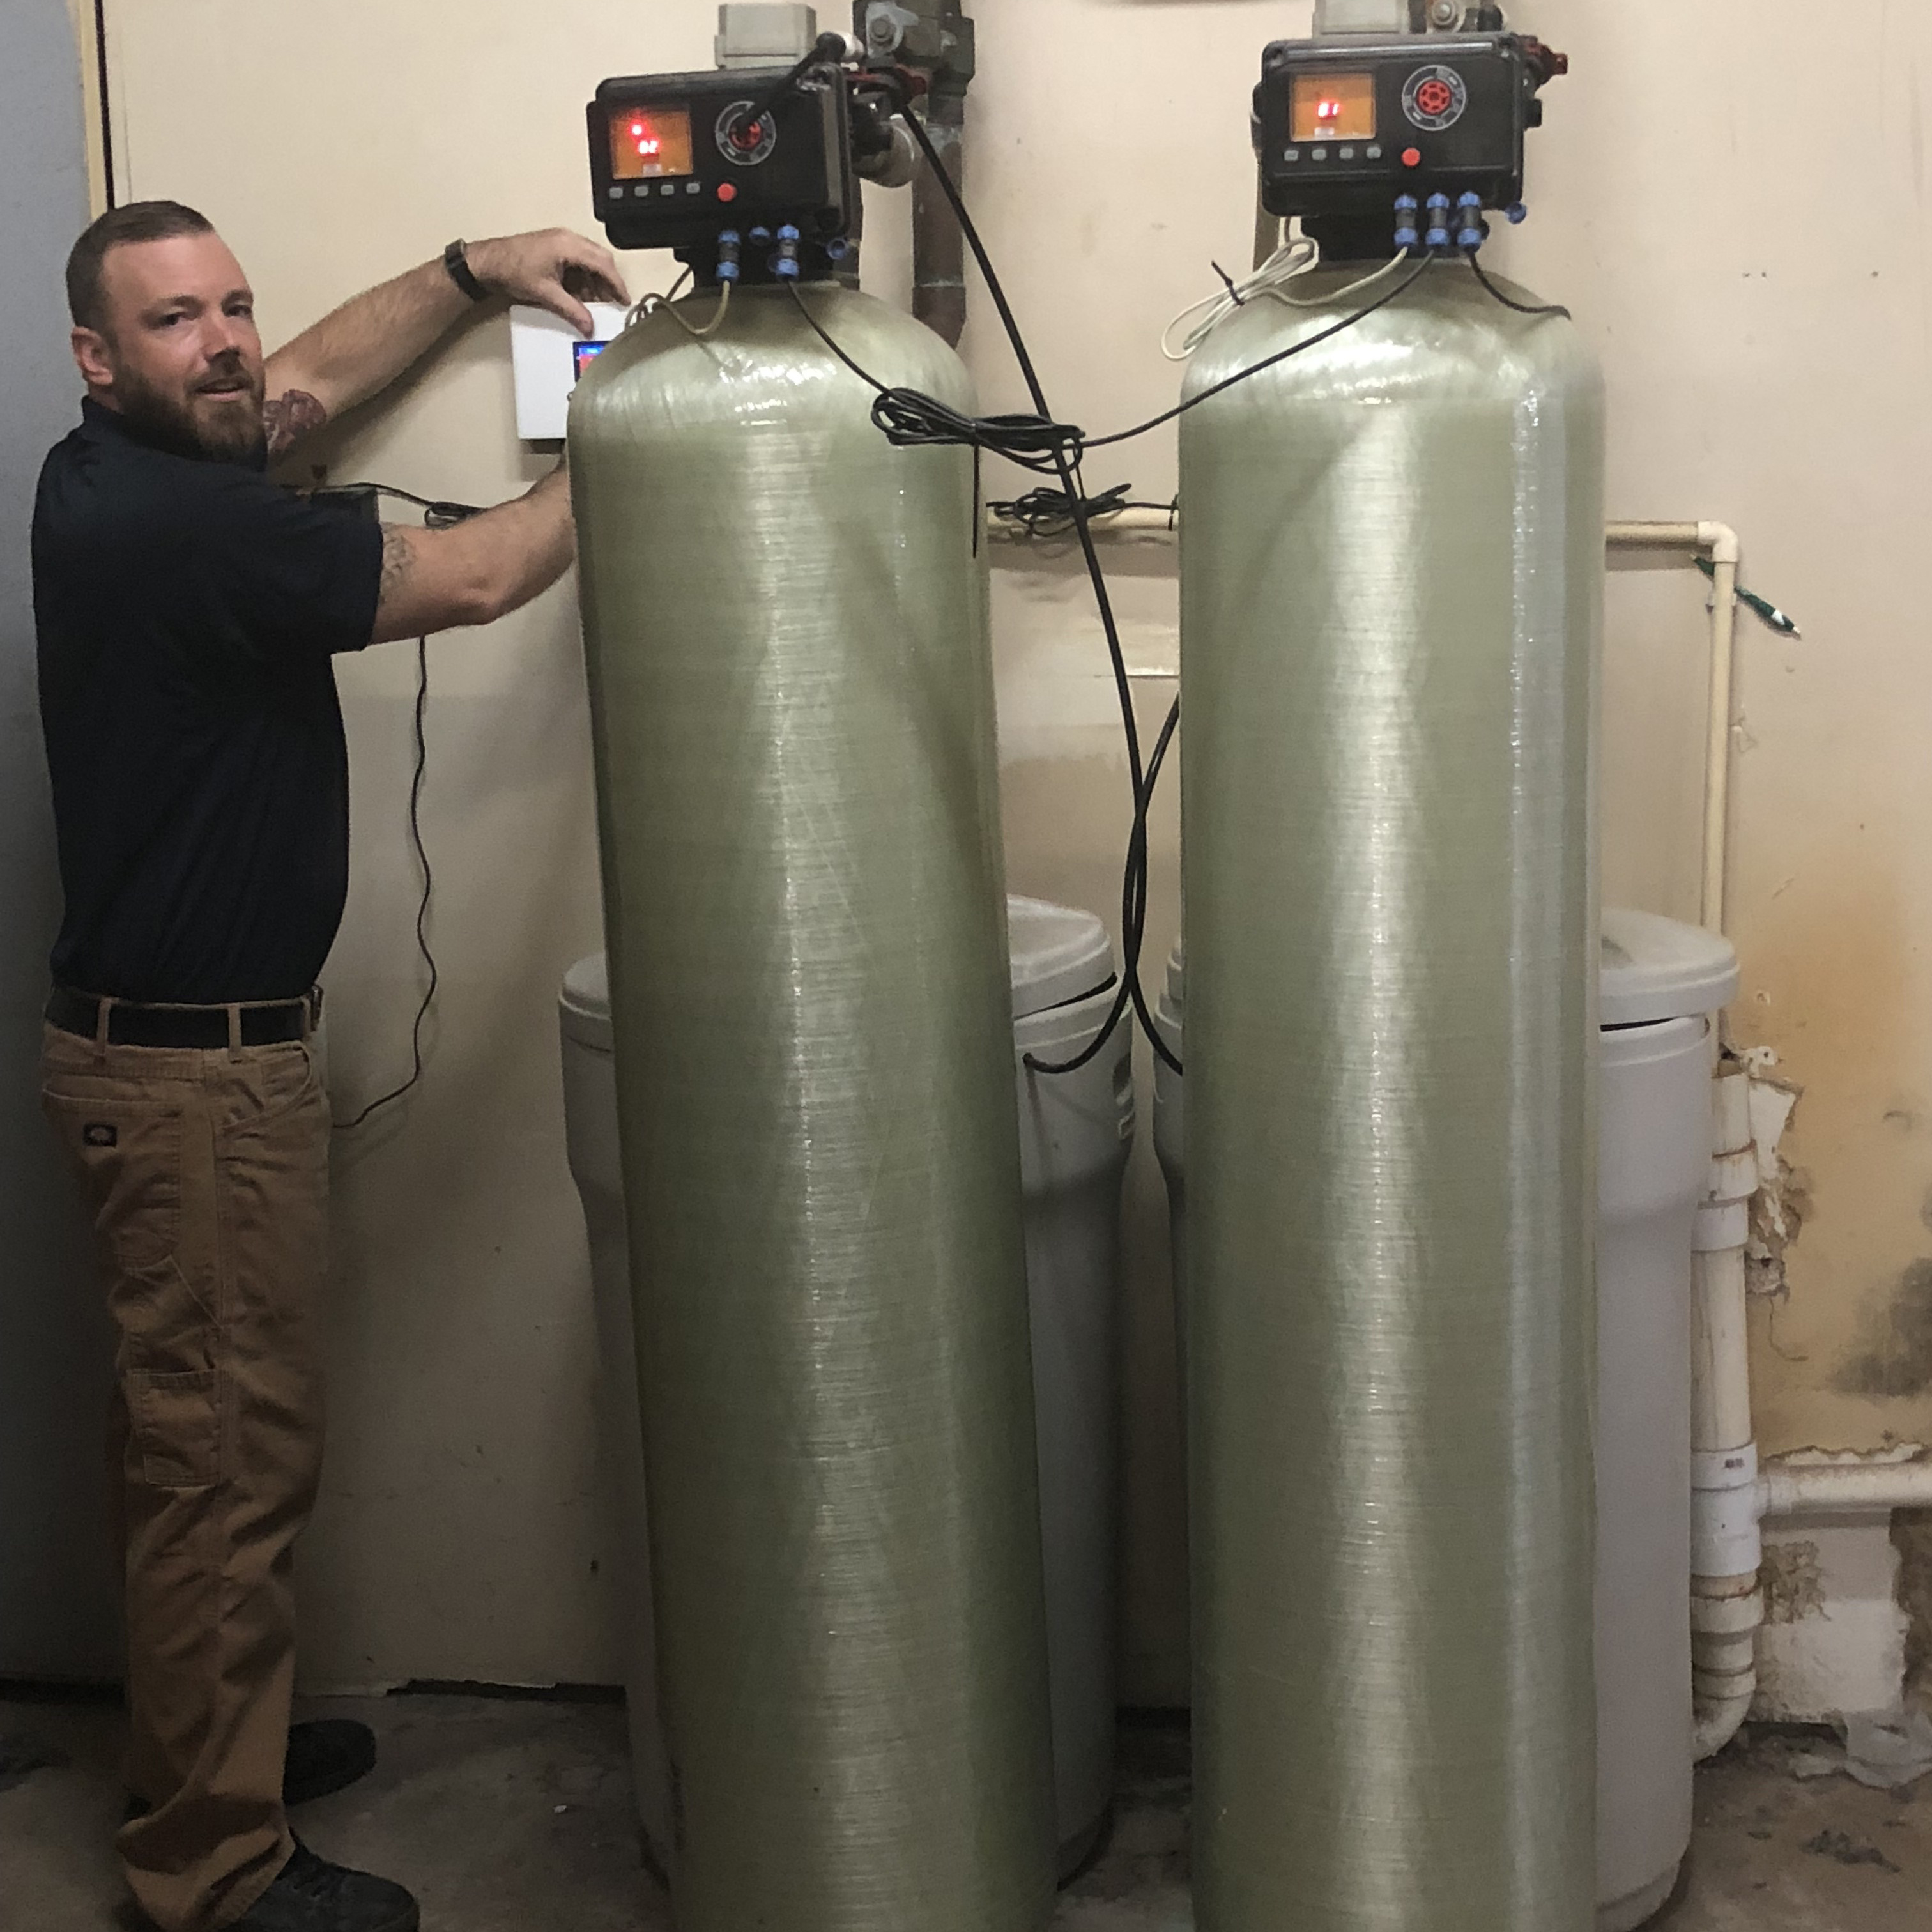 man installing two large, metal hard water filter tanks